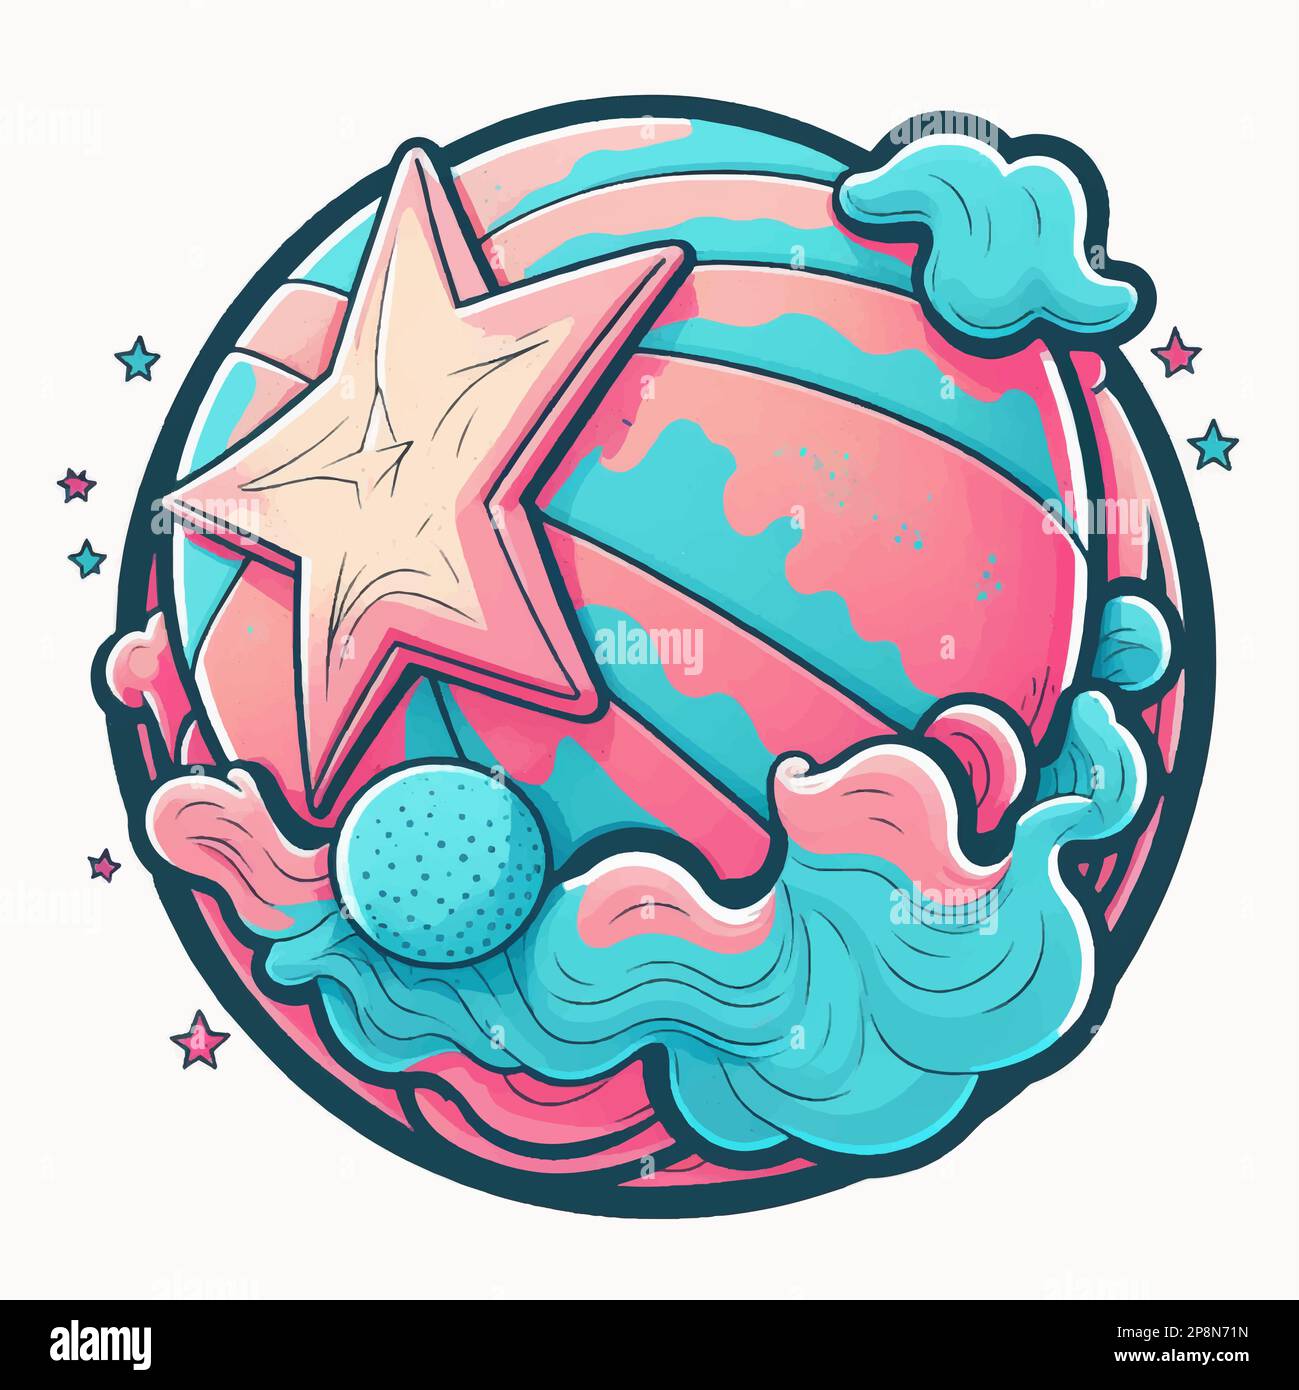 Basketball logo design for women or girls team. Vector illustration Stock  Vector Image & Art - Alamy